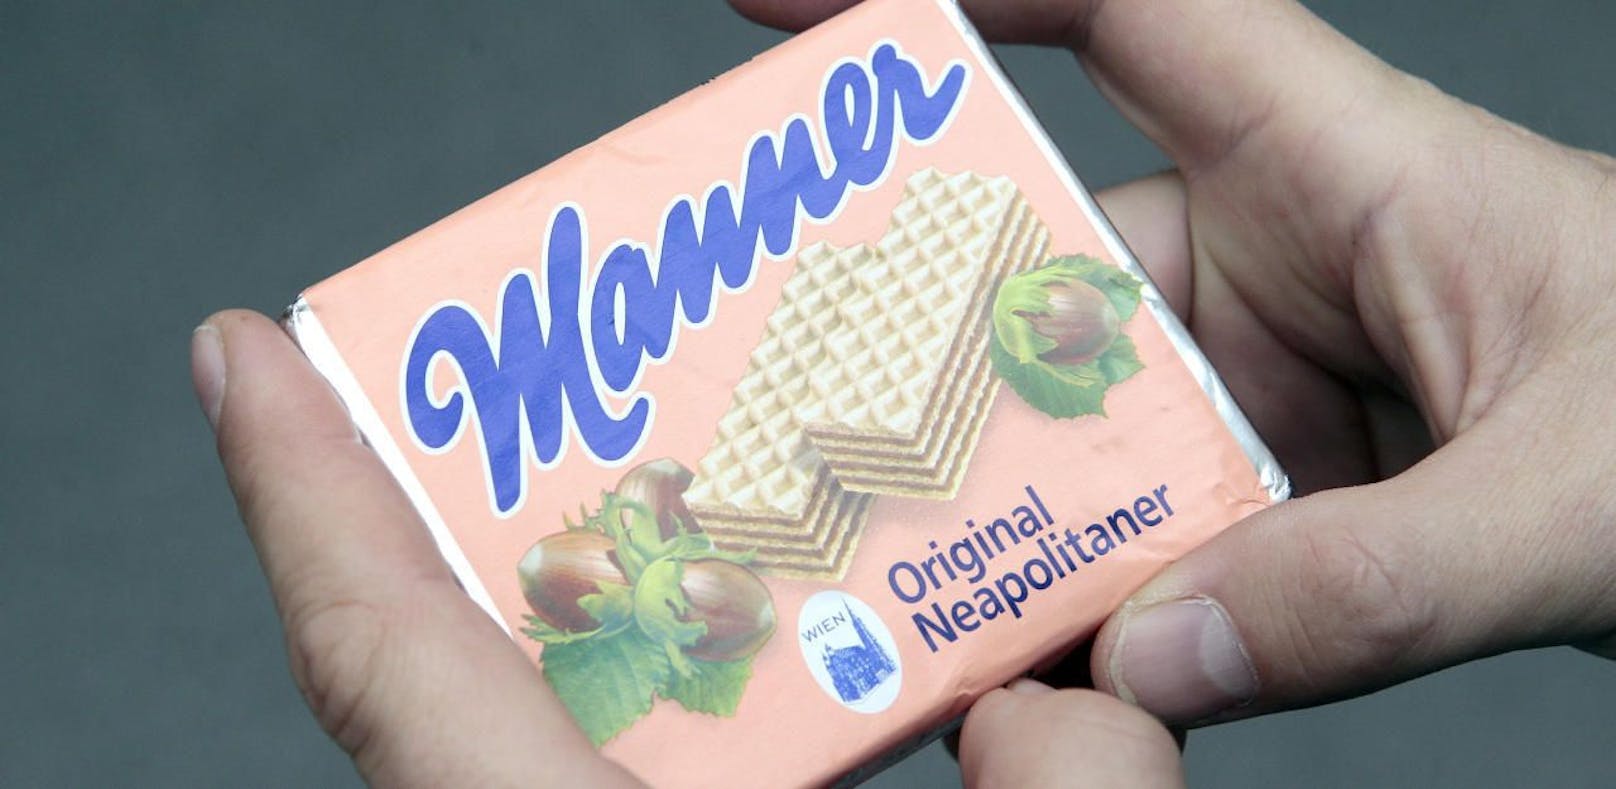 Stein des Anstoßes: Verschiedenste Produkte wie etwa Nutella oder Manner-Schnitten sind in den osteuropäischen Visegrad-Staaten von schlechterer Qualität.